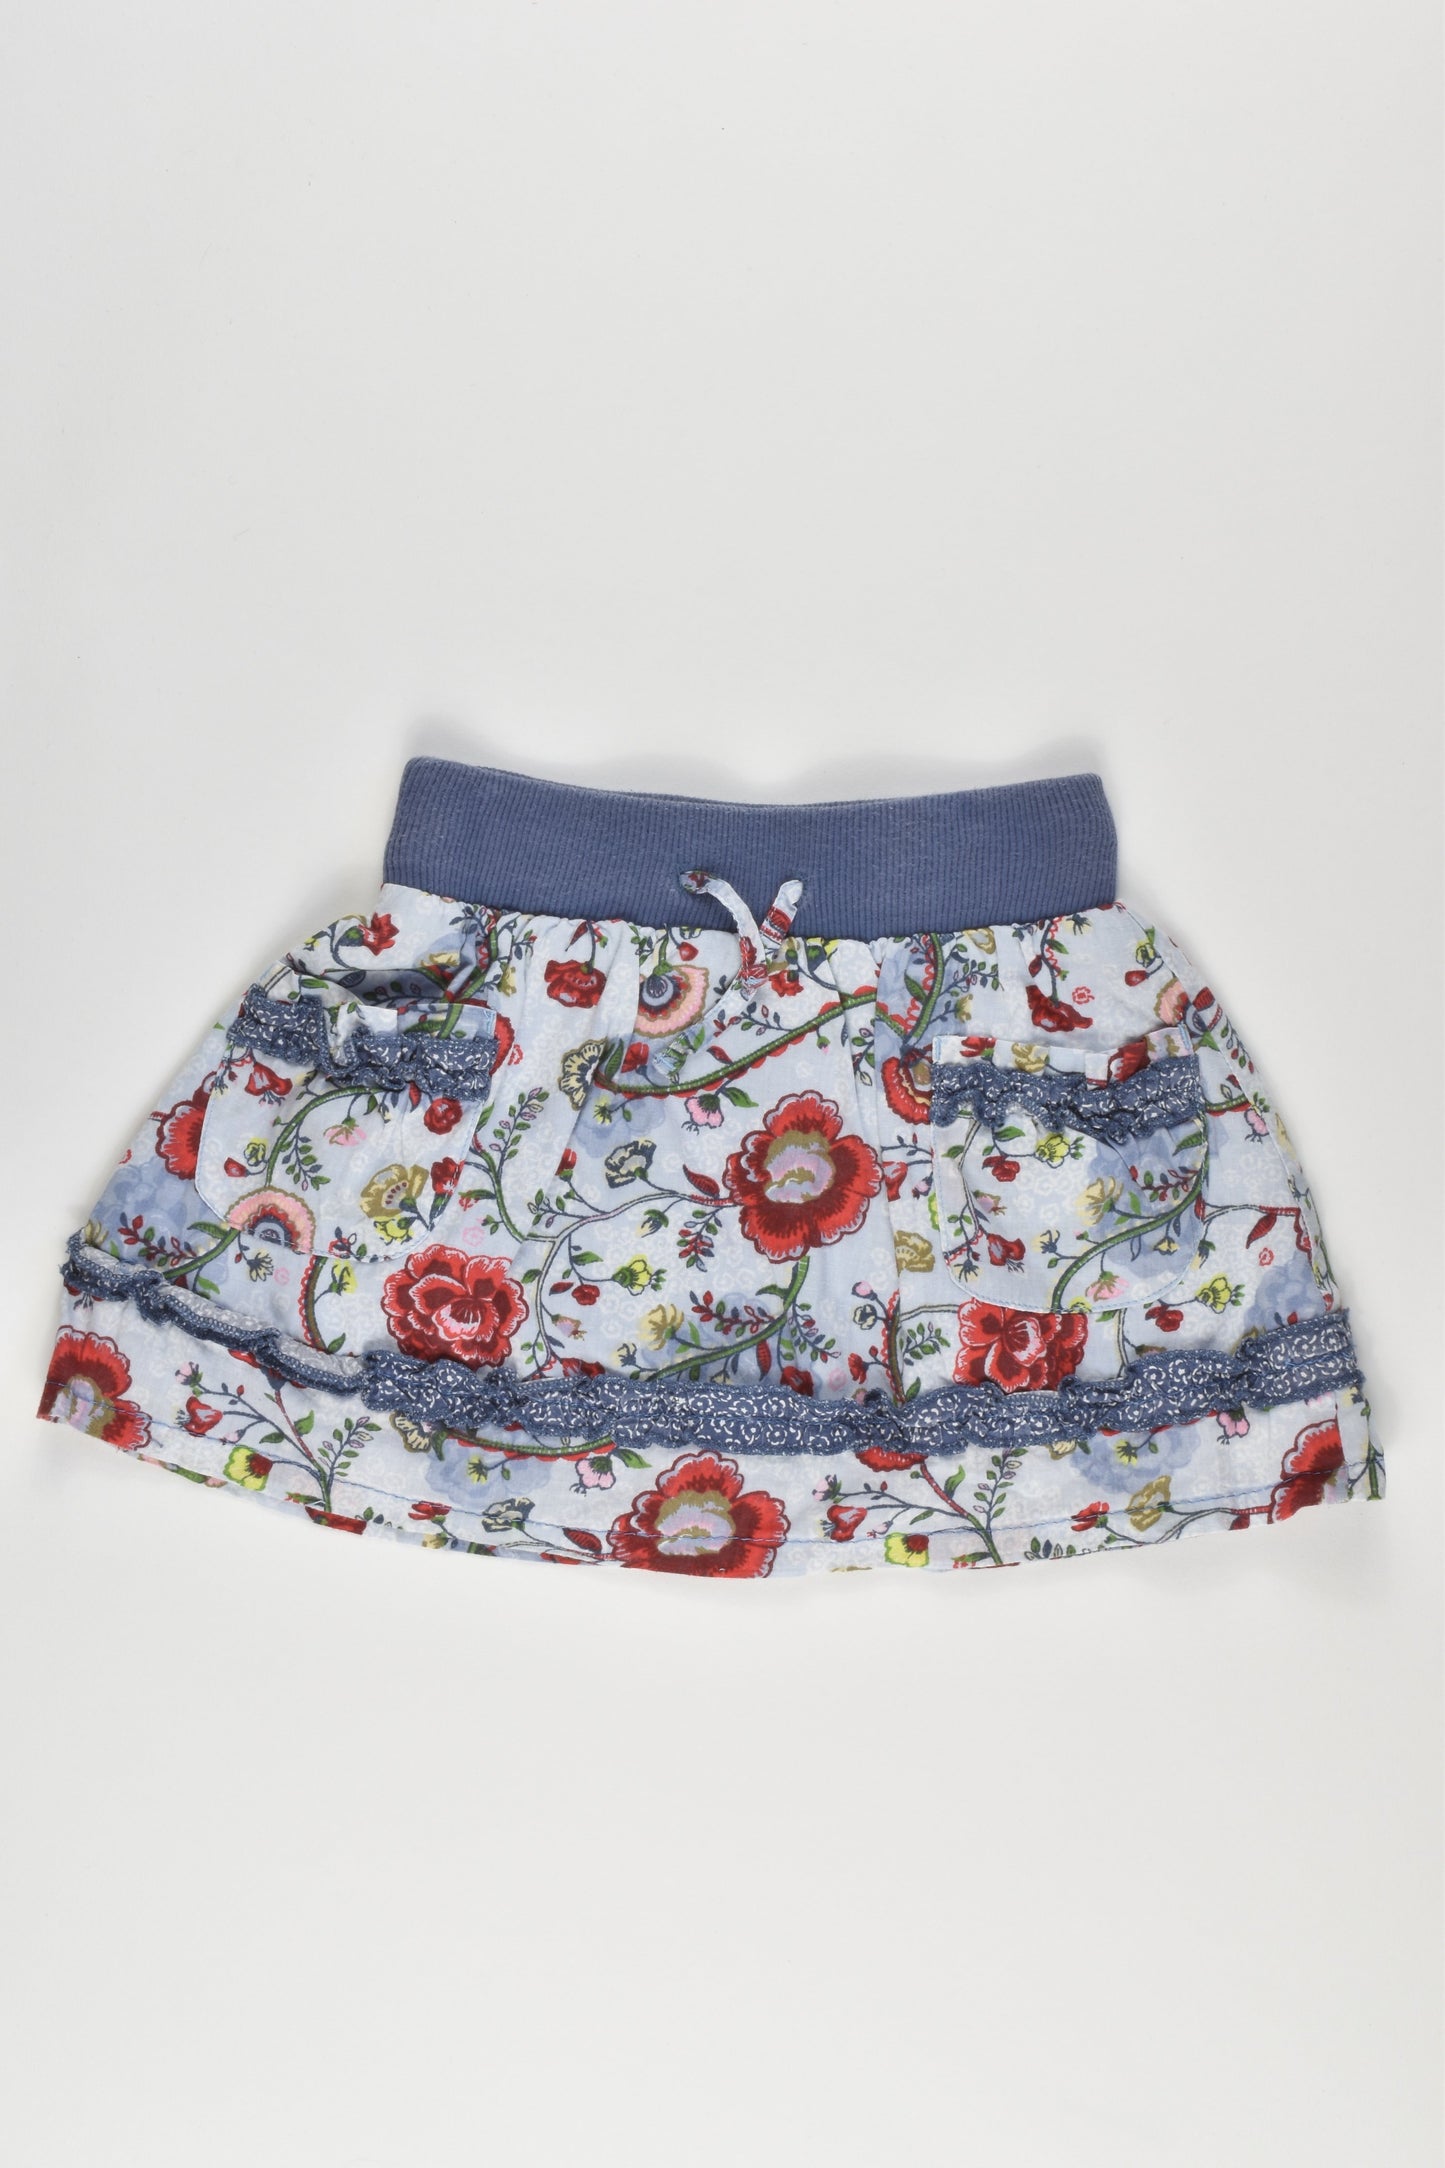 Mexx Size 0 (6-12 months, 74 cm) Skirt